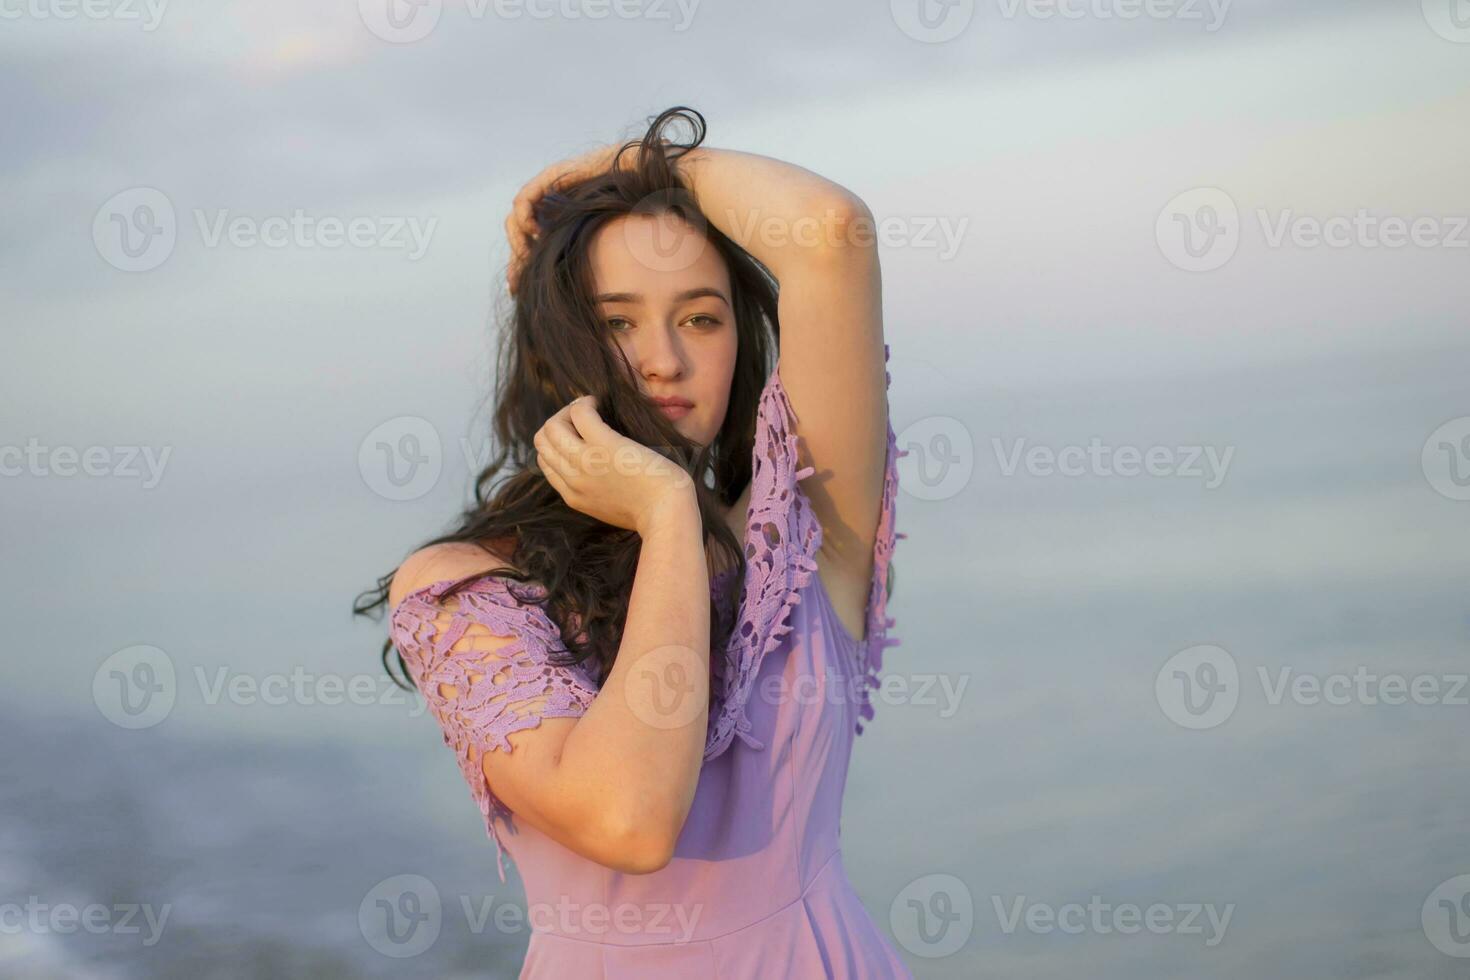 jovem comum menina do modelo aparência posando contra a fundo do a mar e céu foto